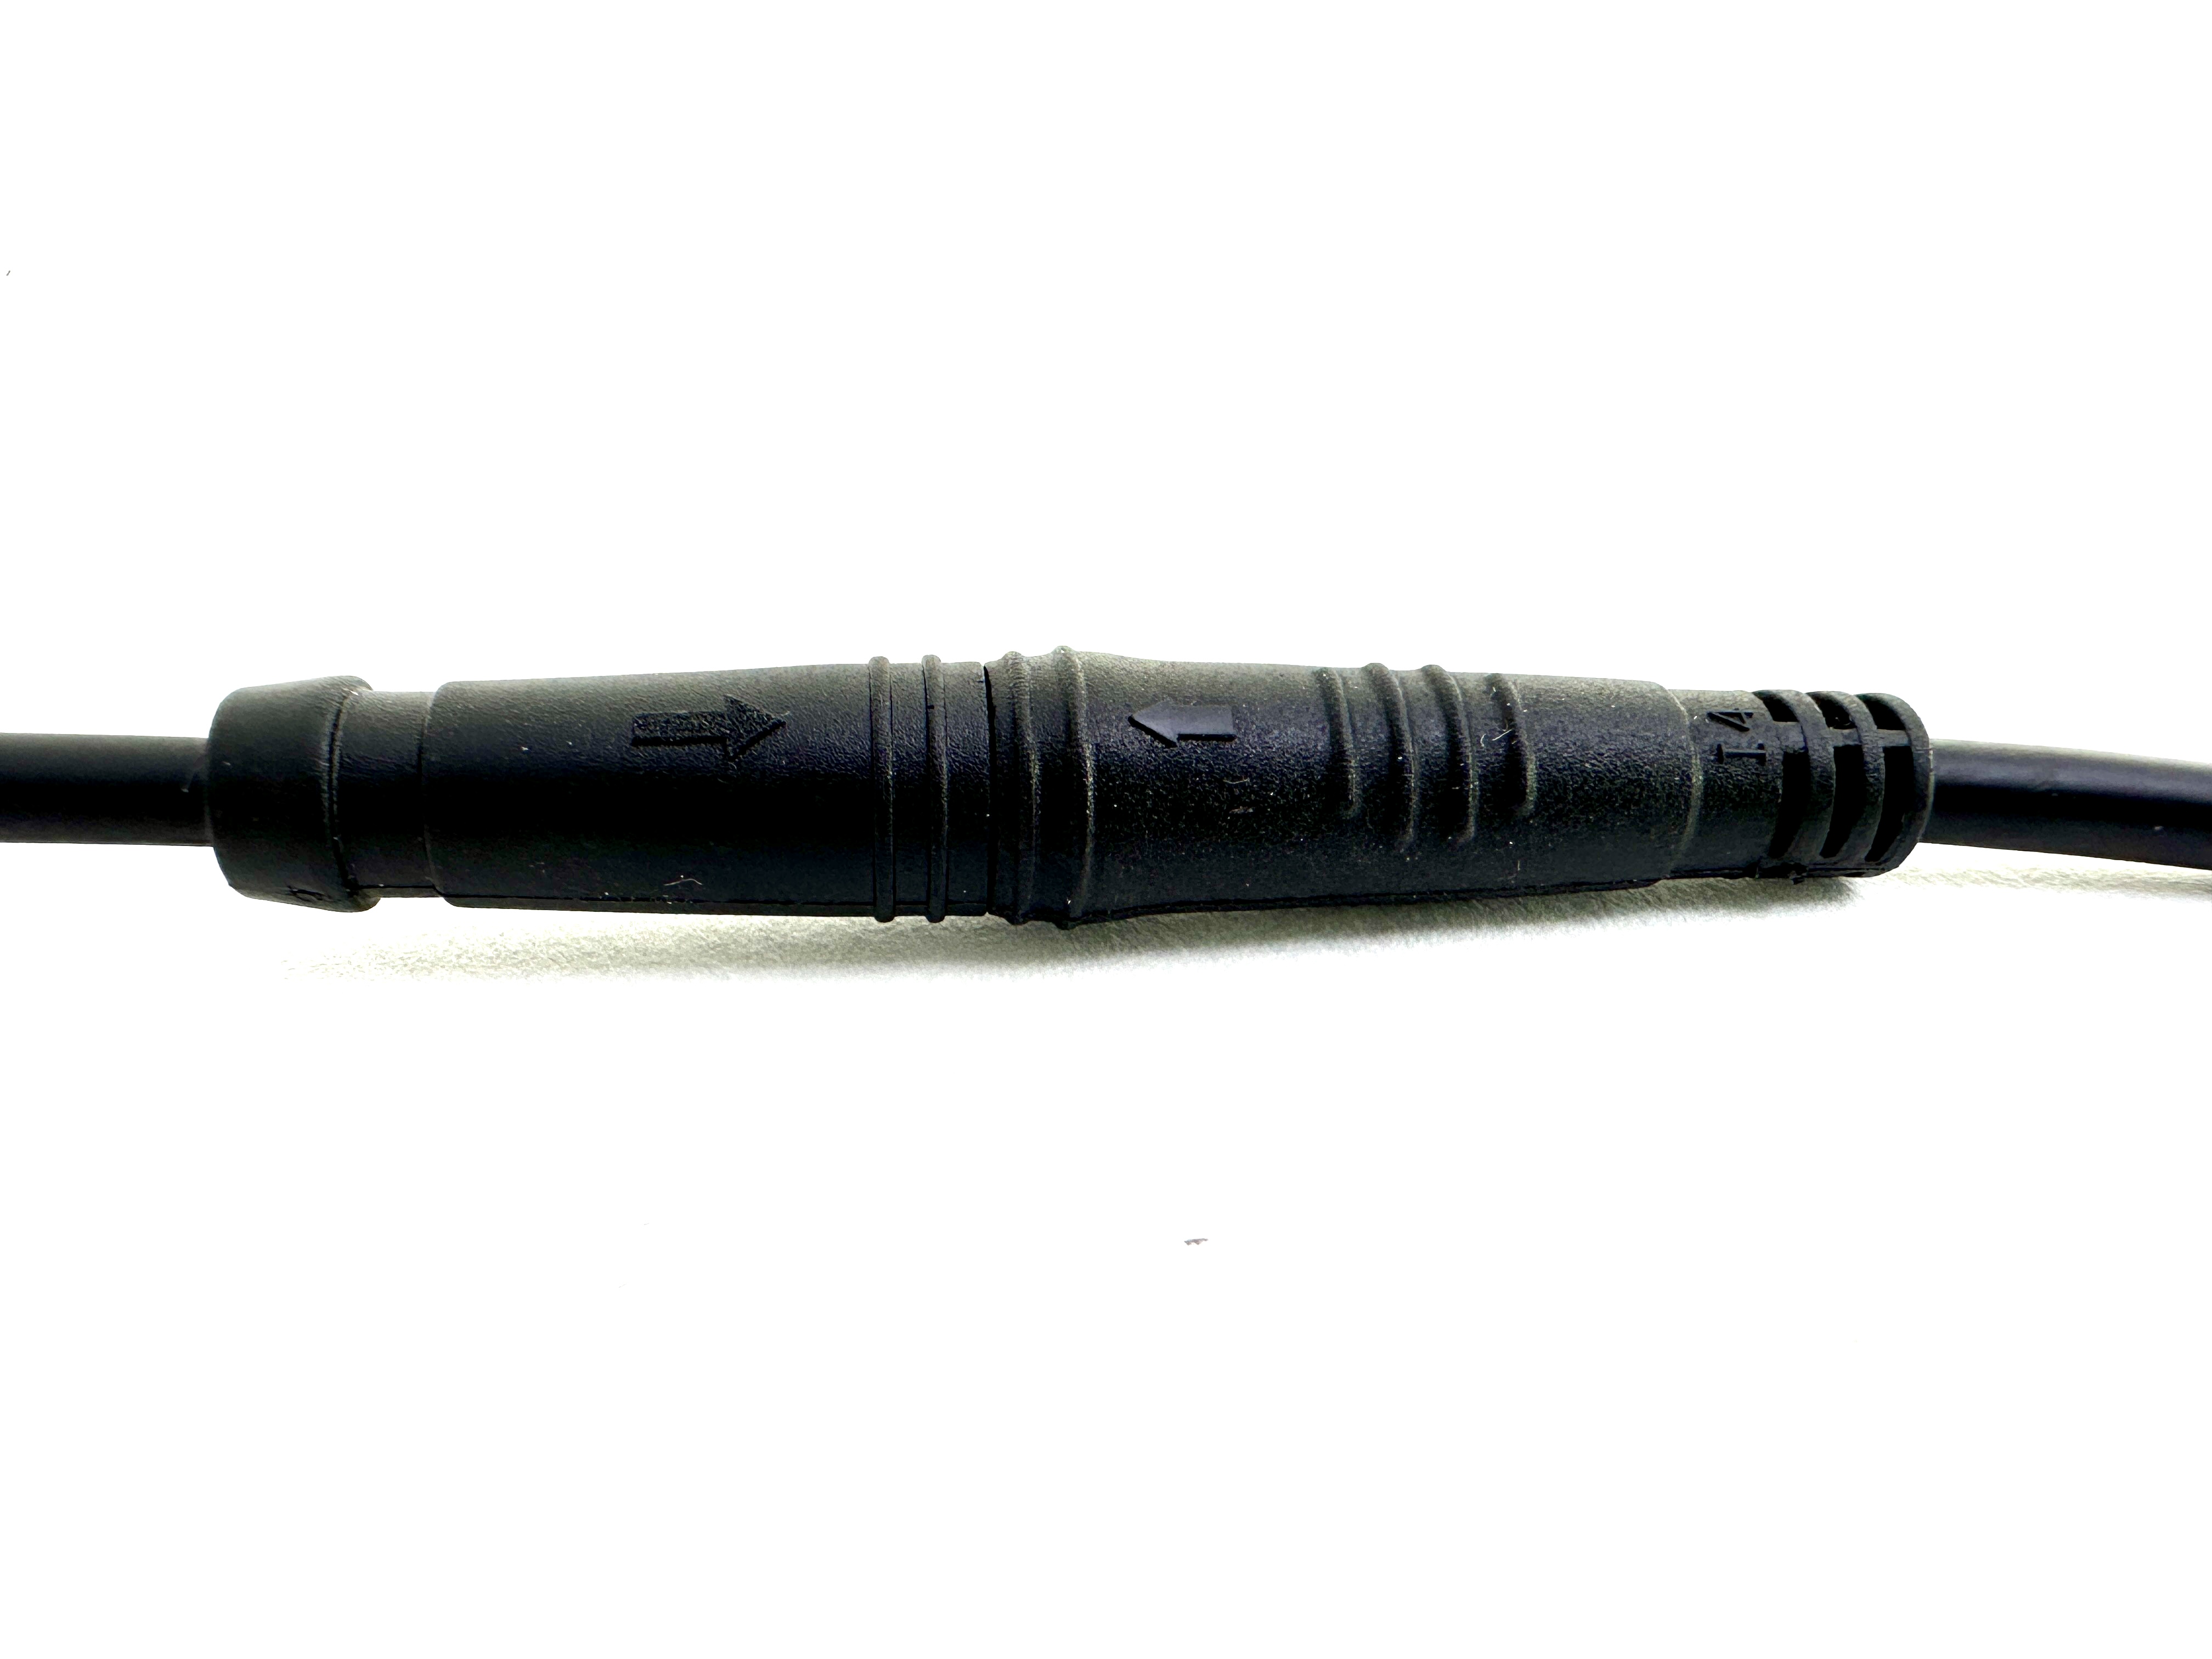 HIGO / Julet cable adaptador de 10,5 cm para ebike, 2 PIN hembra a hembra, rojo